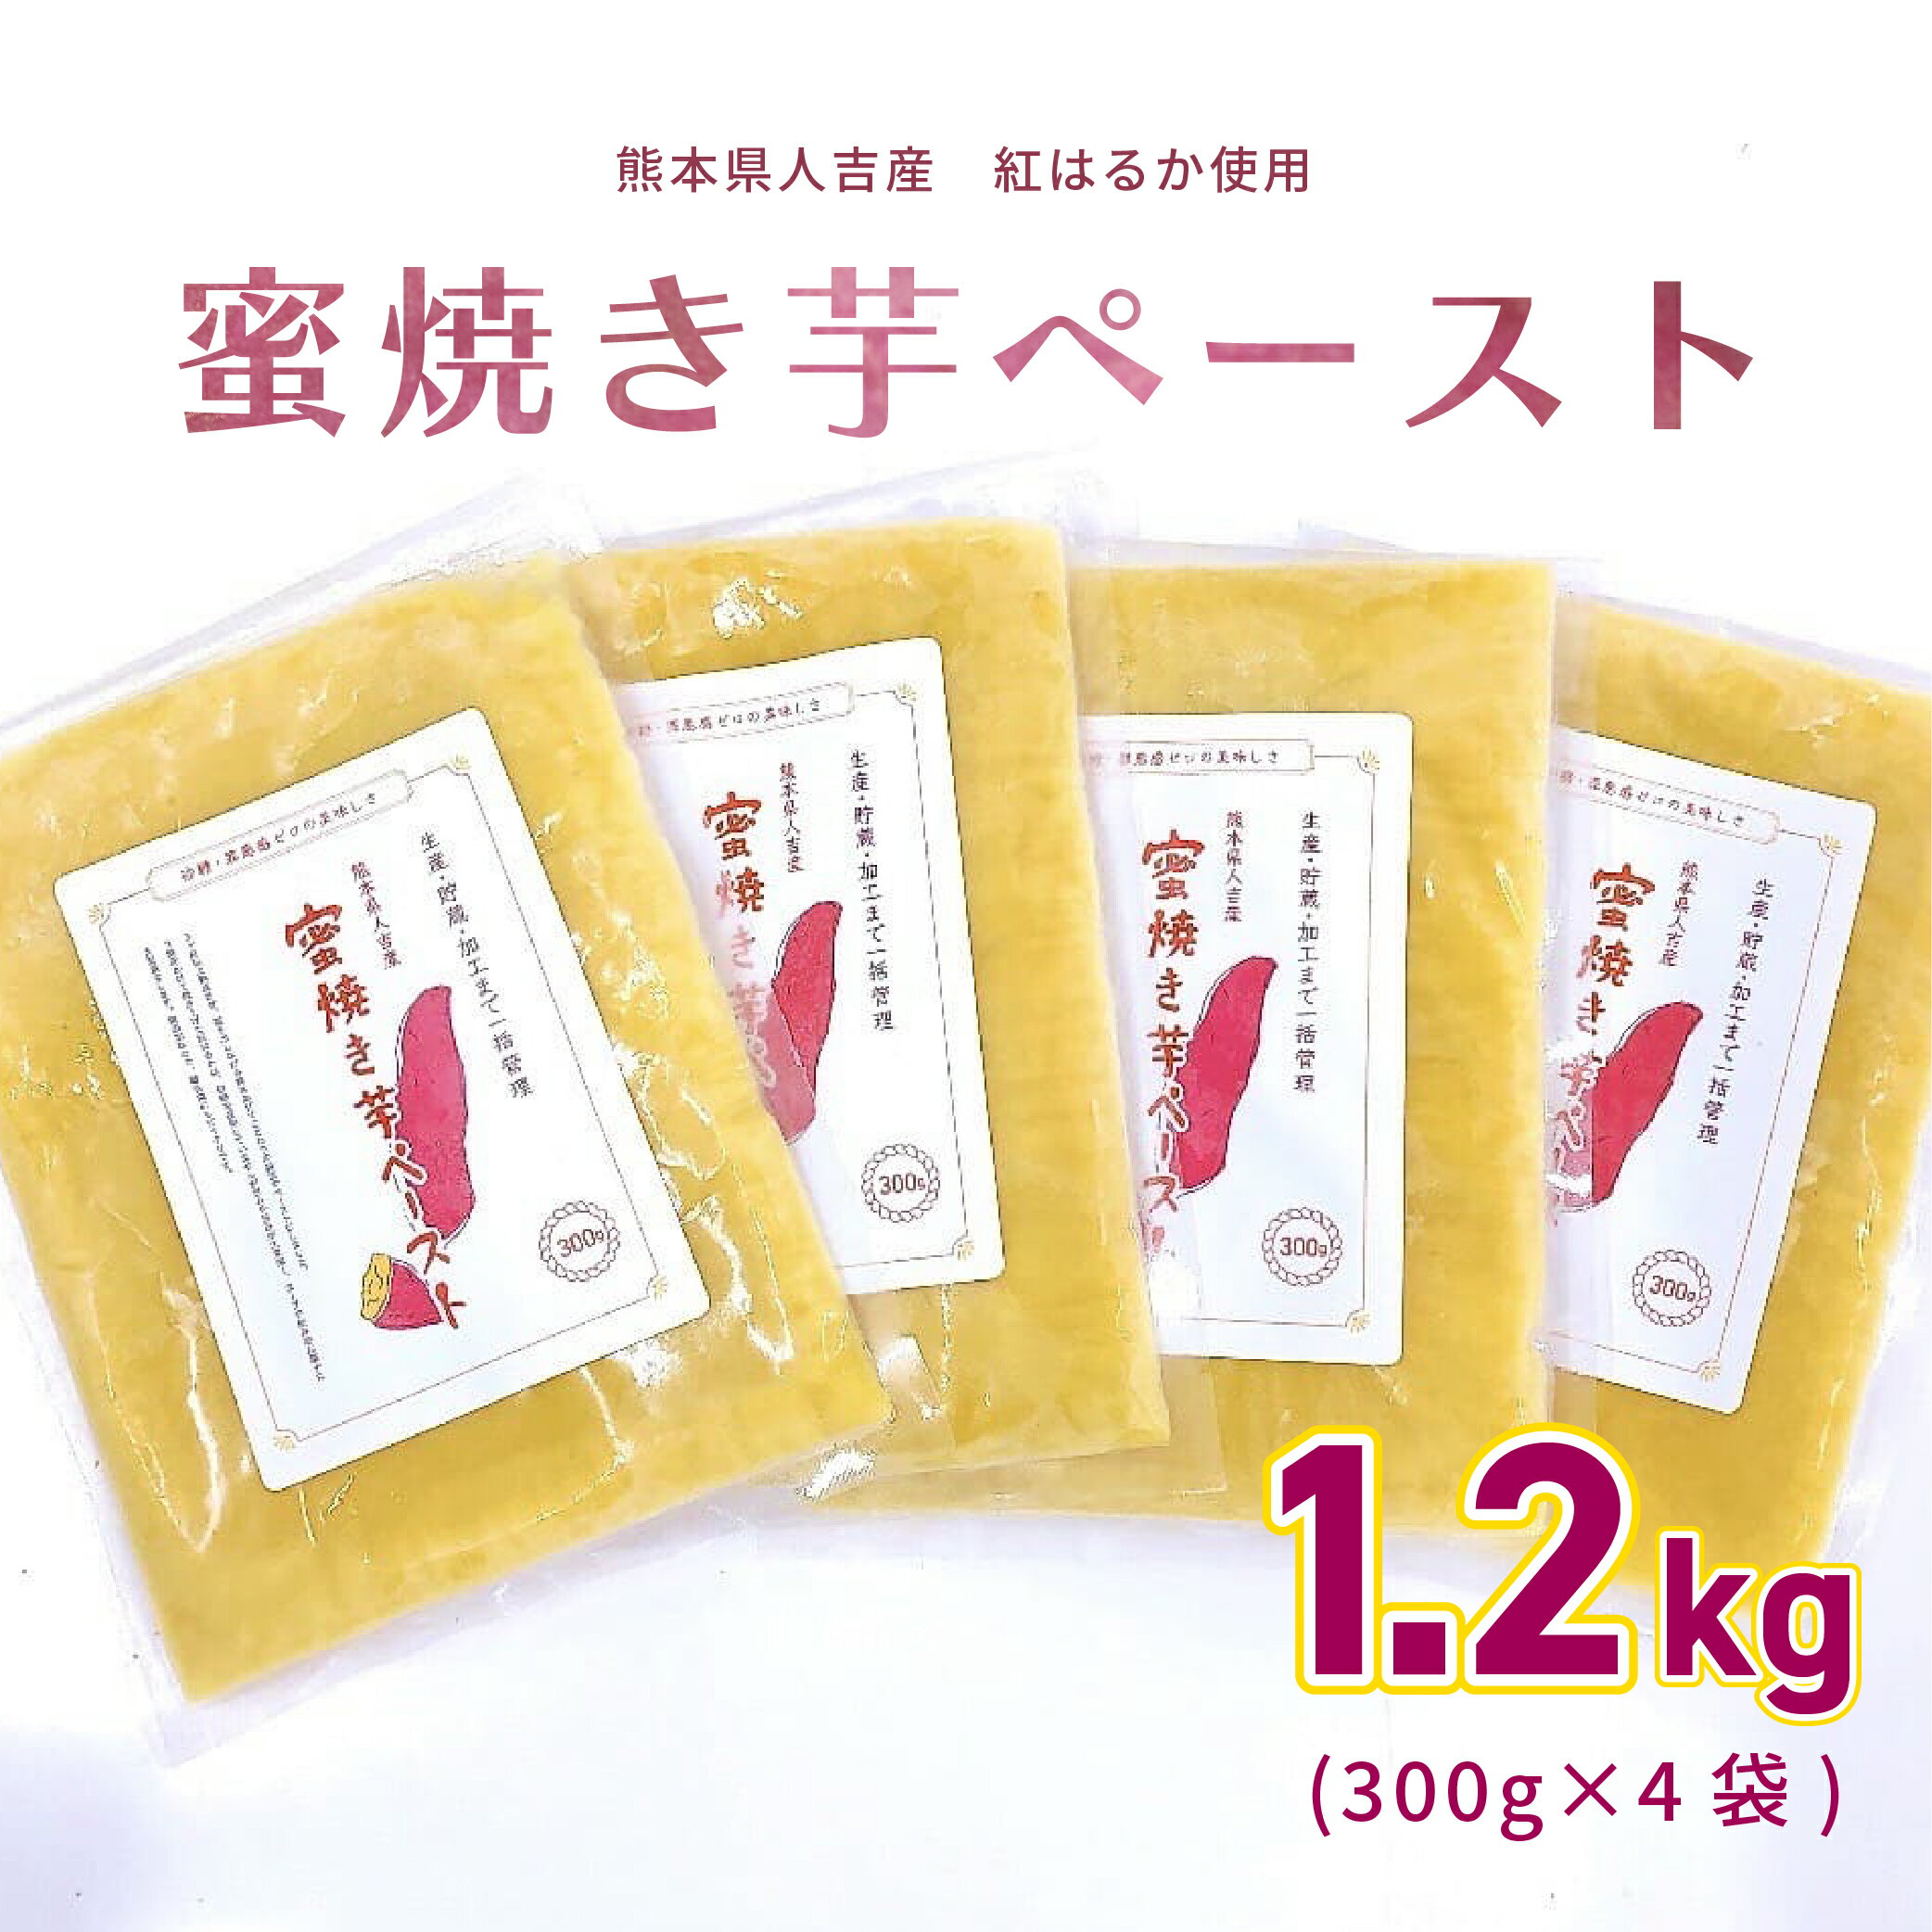 【＼10%OFF／スーパーSALE限定価格！】蜜焼き芋ペースト 1.2kg (約300g×4袋) 熊本県産紅はるか使用 さつまいも 無添加 砂糖不使用